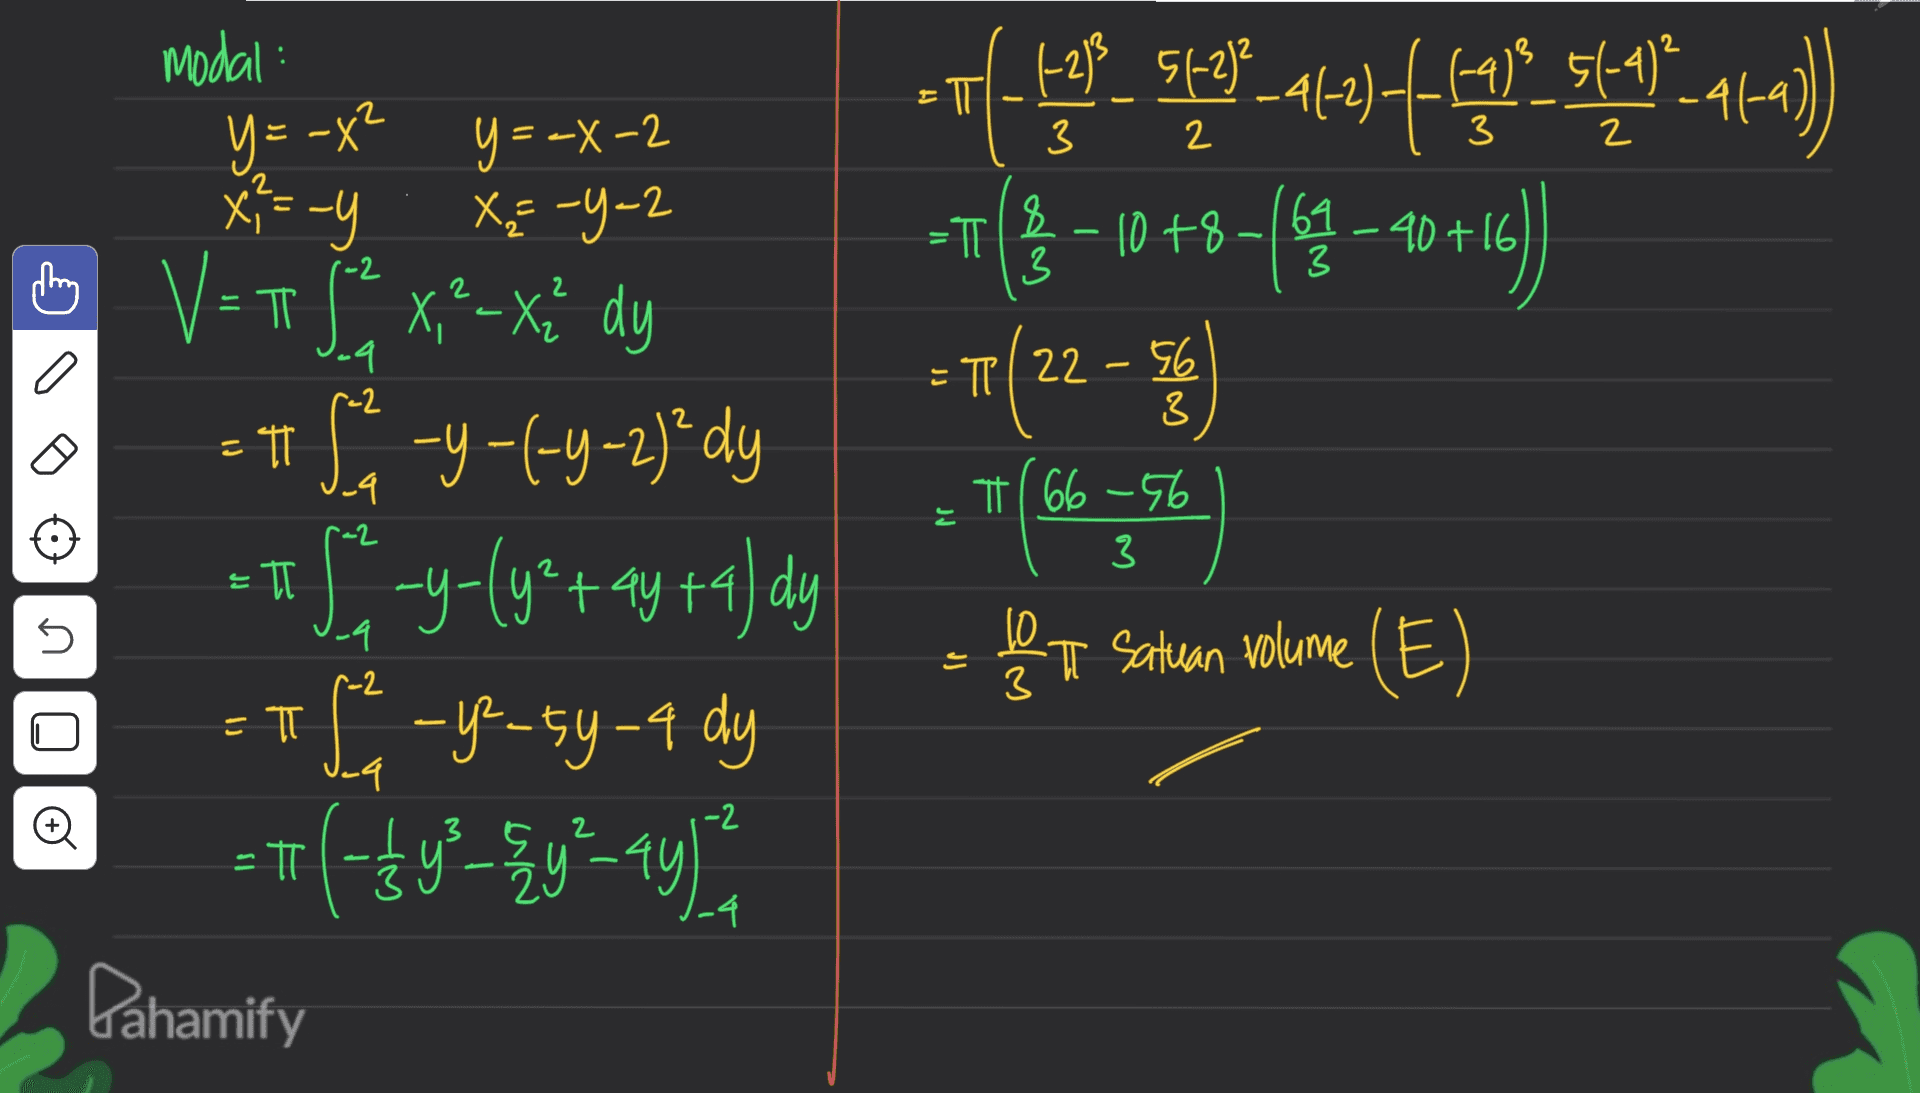 51-26_al 5(-4) I modal: y = -x? y=-x-2 -y X-4-2 -6213 (م- 3 3 2 x = -1 ,? TT & 61 -40+ -2 3 ovul pe TESTS_4_294 Eng Fall 24-0) _ , -4) =T3 -10 +8 -(44 – 2016) (22-56 27 () - be a Satuan volume (E) = TT 22 – 56 ra2 3 -9 -2 π/ 66 -56 3 E = TT V=TS*x*-xă dy =#8 -y-(-4-2)² dy == S-y-ly*+ 4y +4) dy -y-su-4 dy -- (-19-30-19) 一方 Lahamify U 4. 10 3 r=2 =T -4 -2 -4 